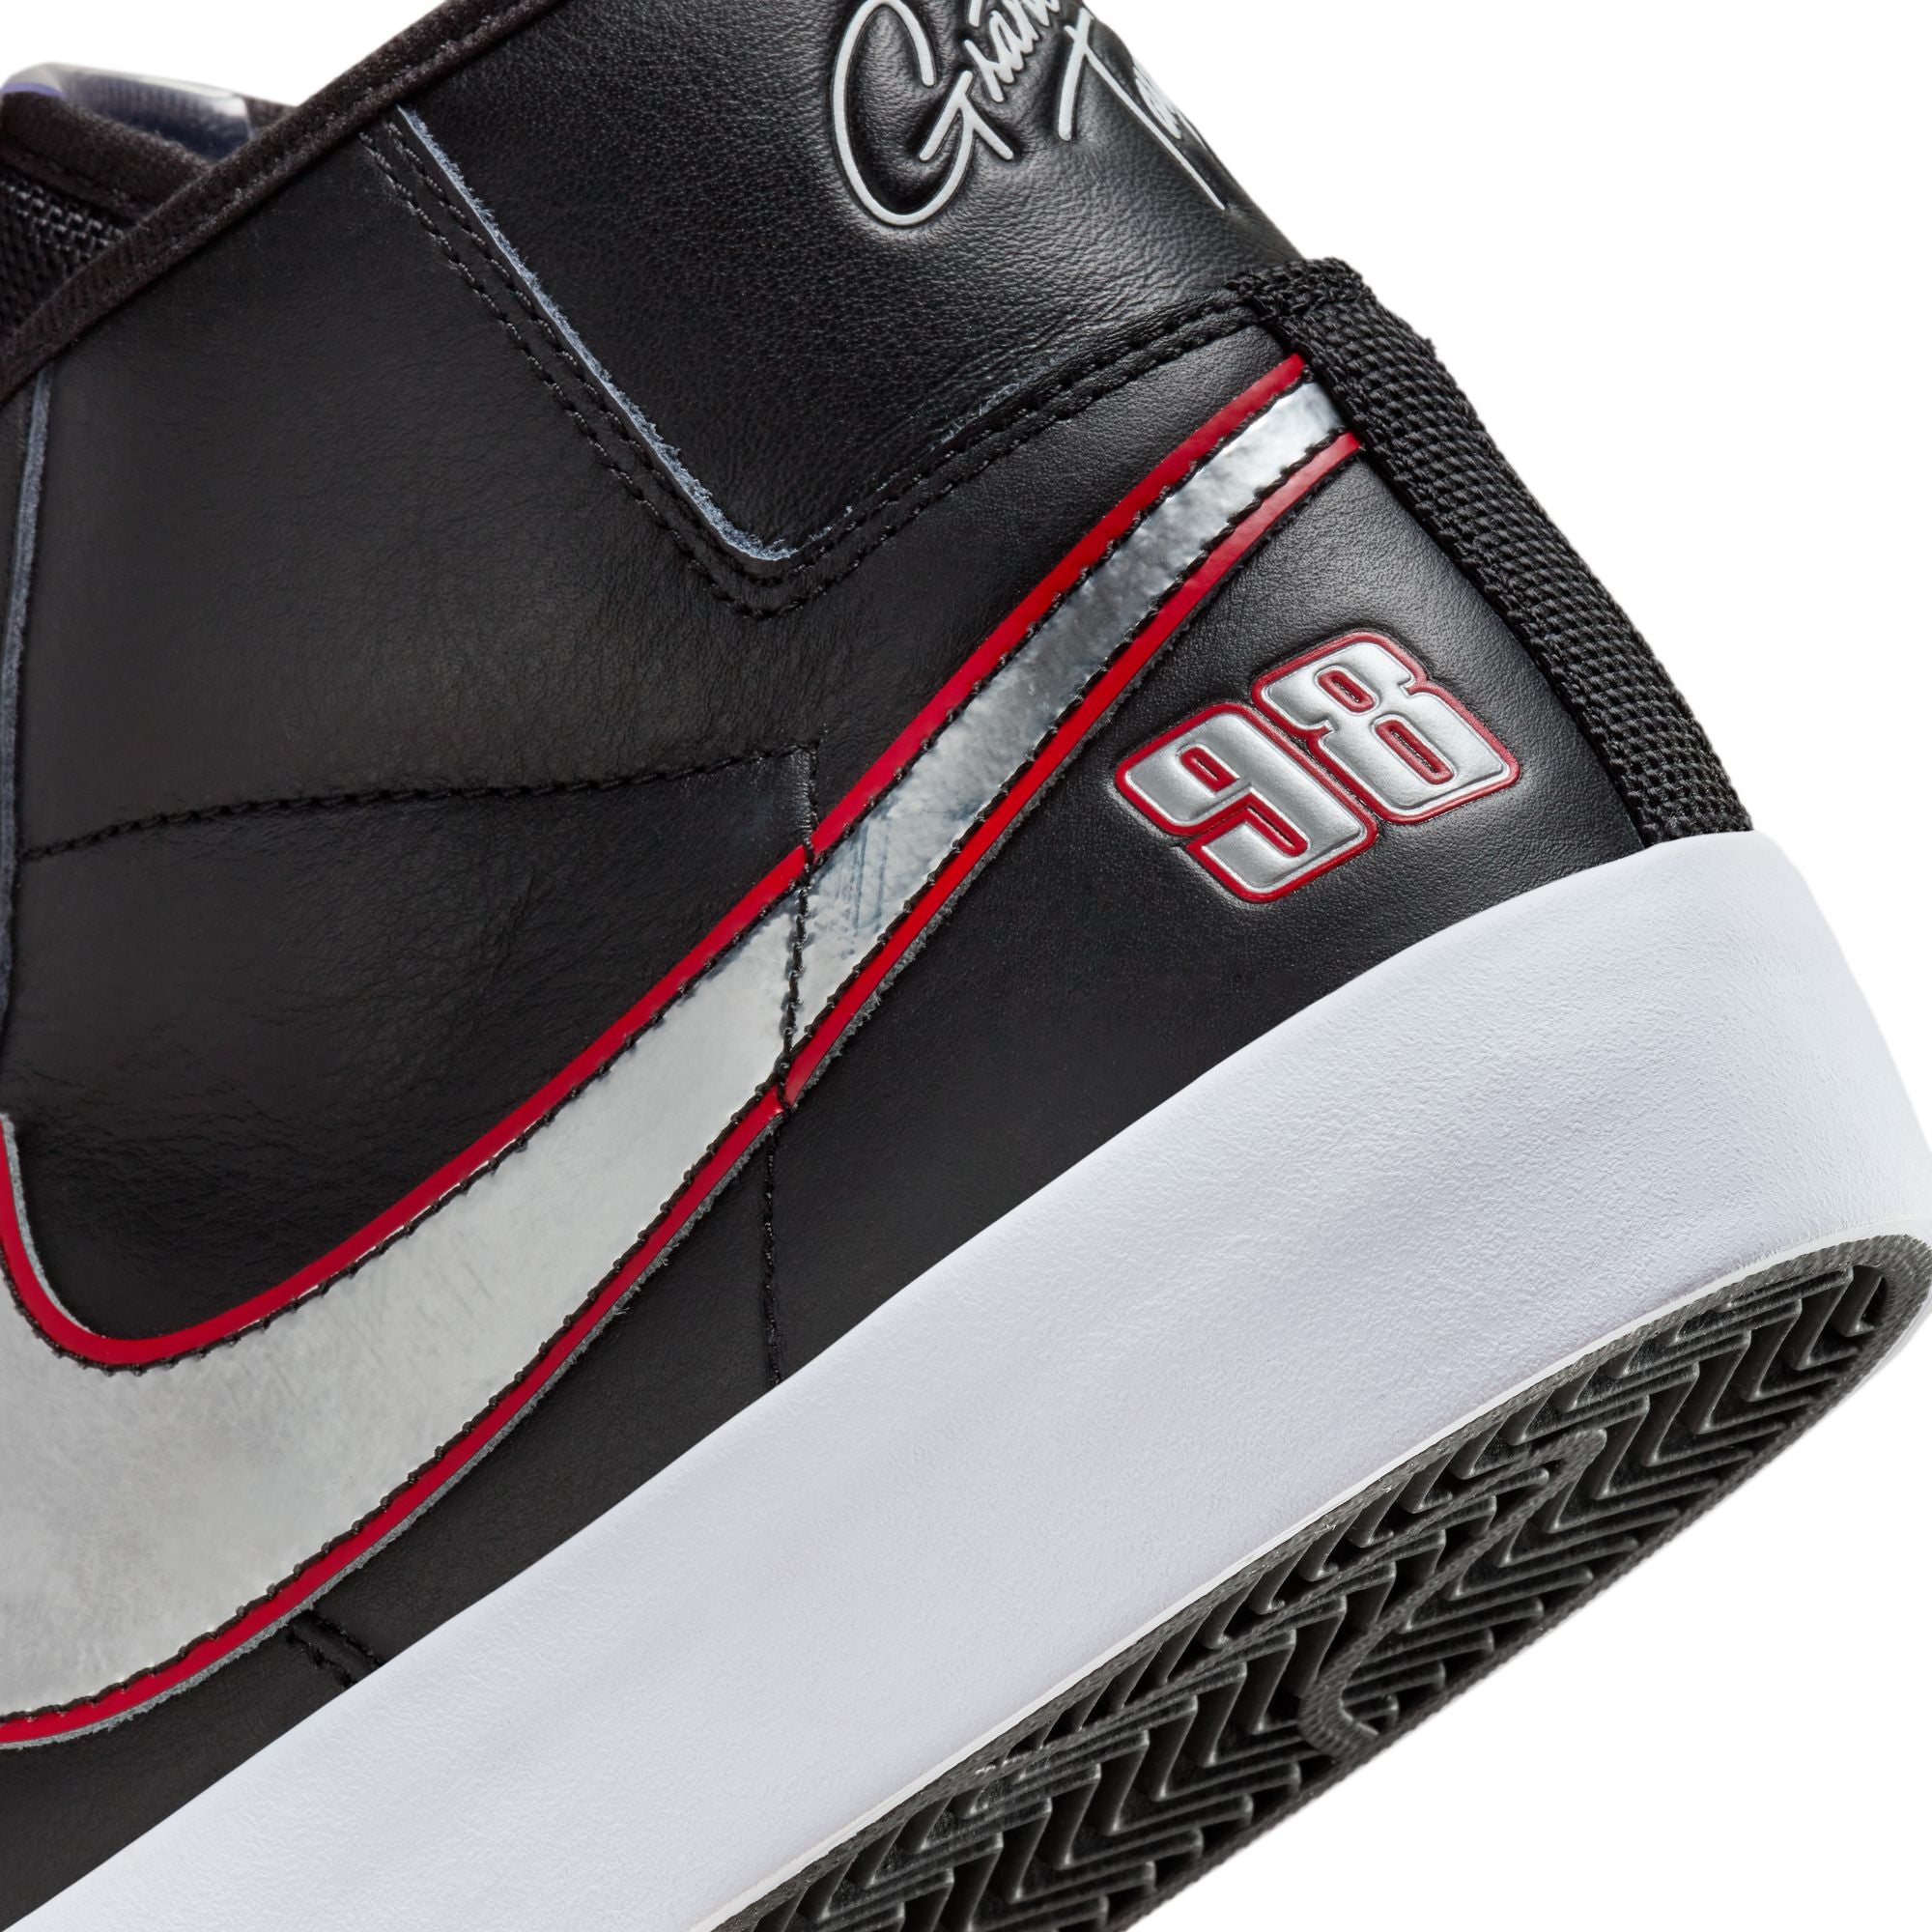 Black Grant Taylor Blazer Mid Pro Nike SB Skate Shoe Detail